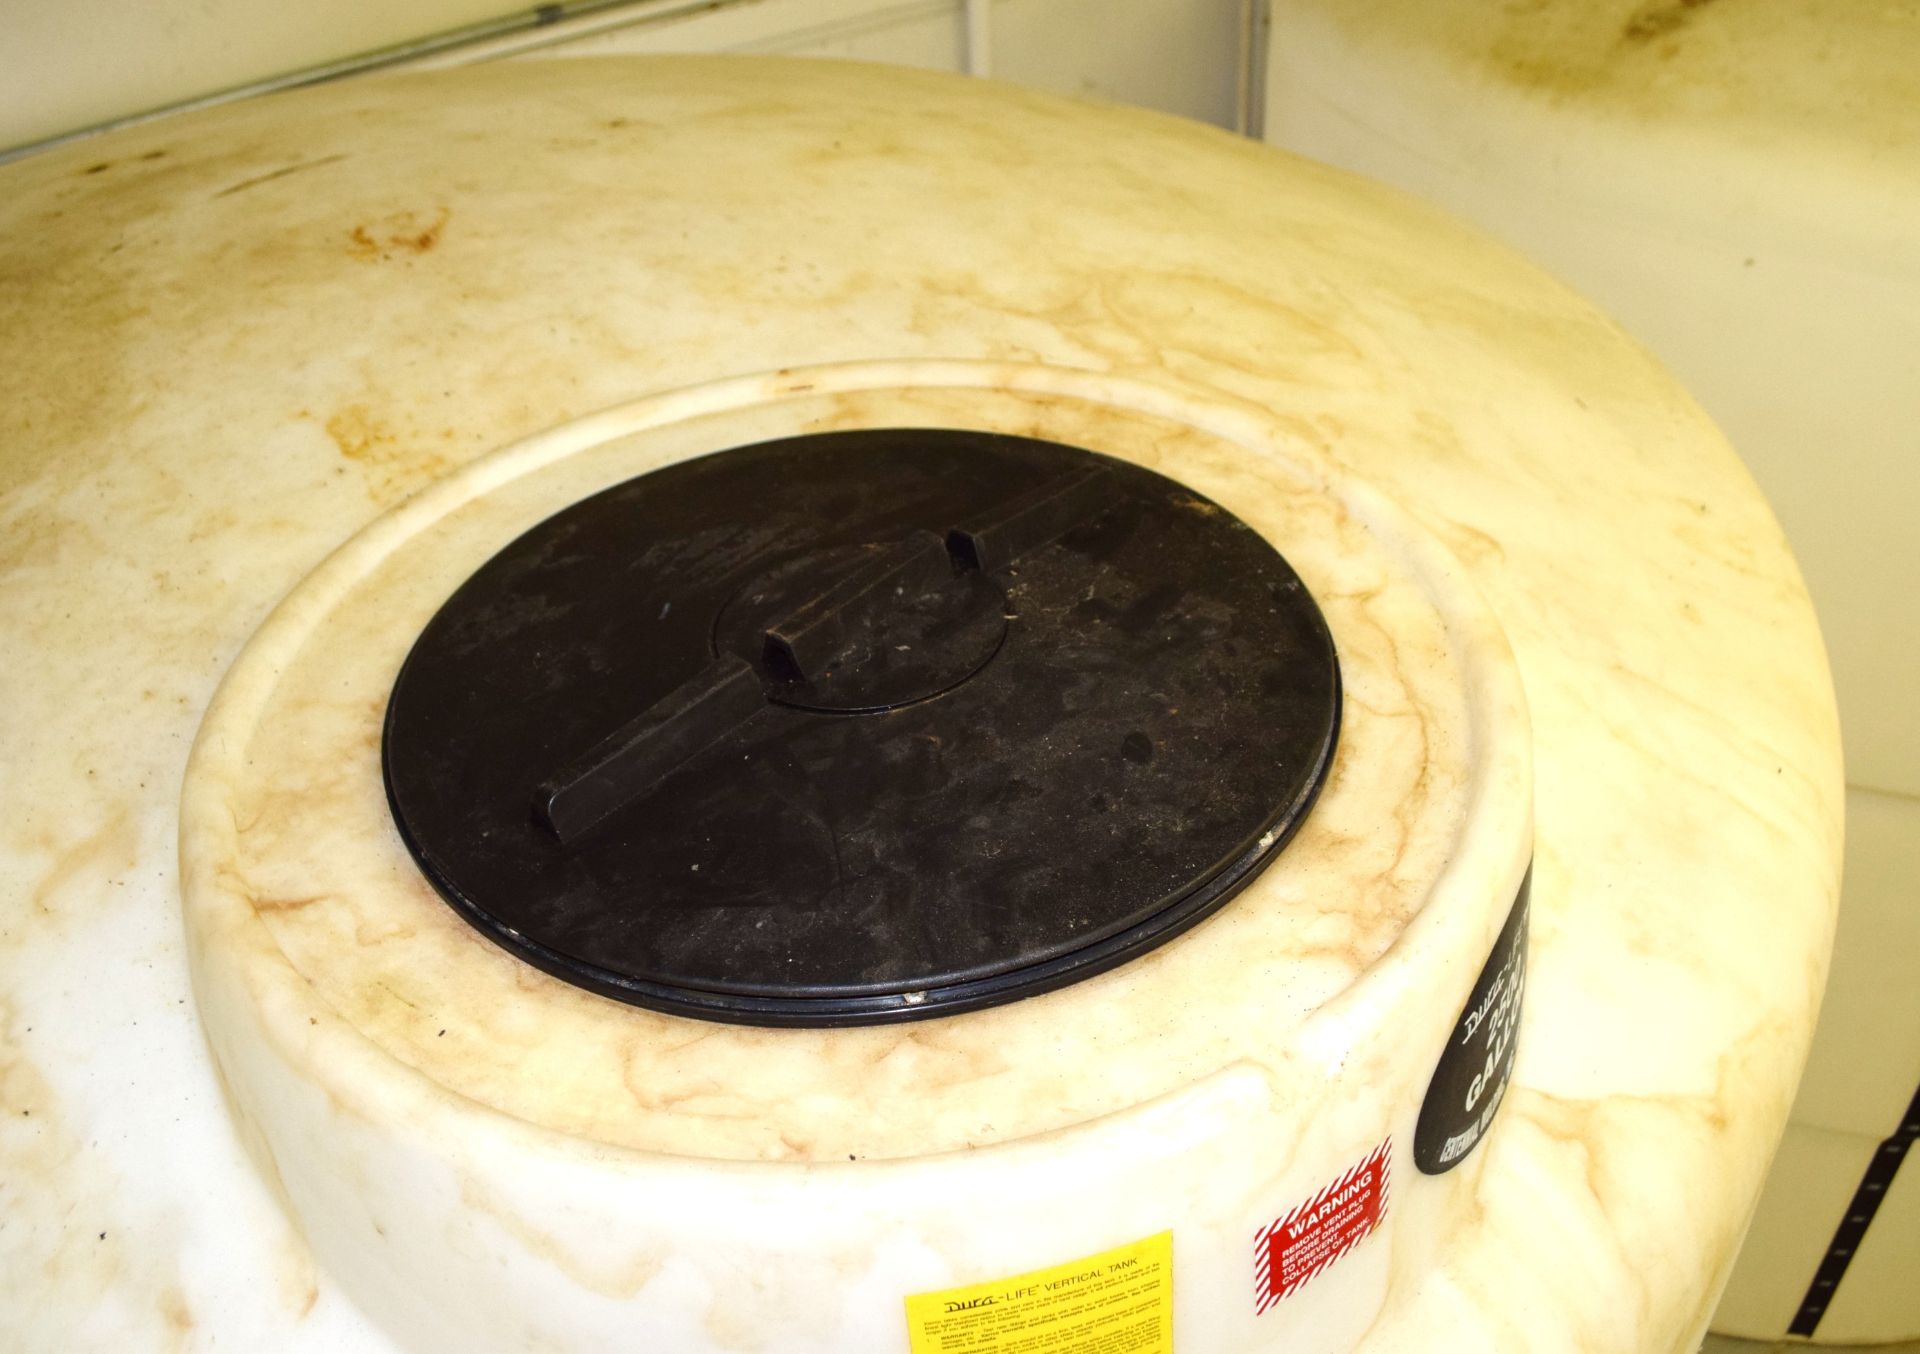 Centennial Molding 2500 Gallon Dura-Life Polyethylene Tank. Approximate 84" diameter x 84" - Image 3 of 12